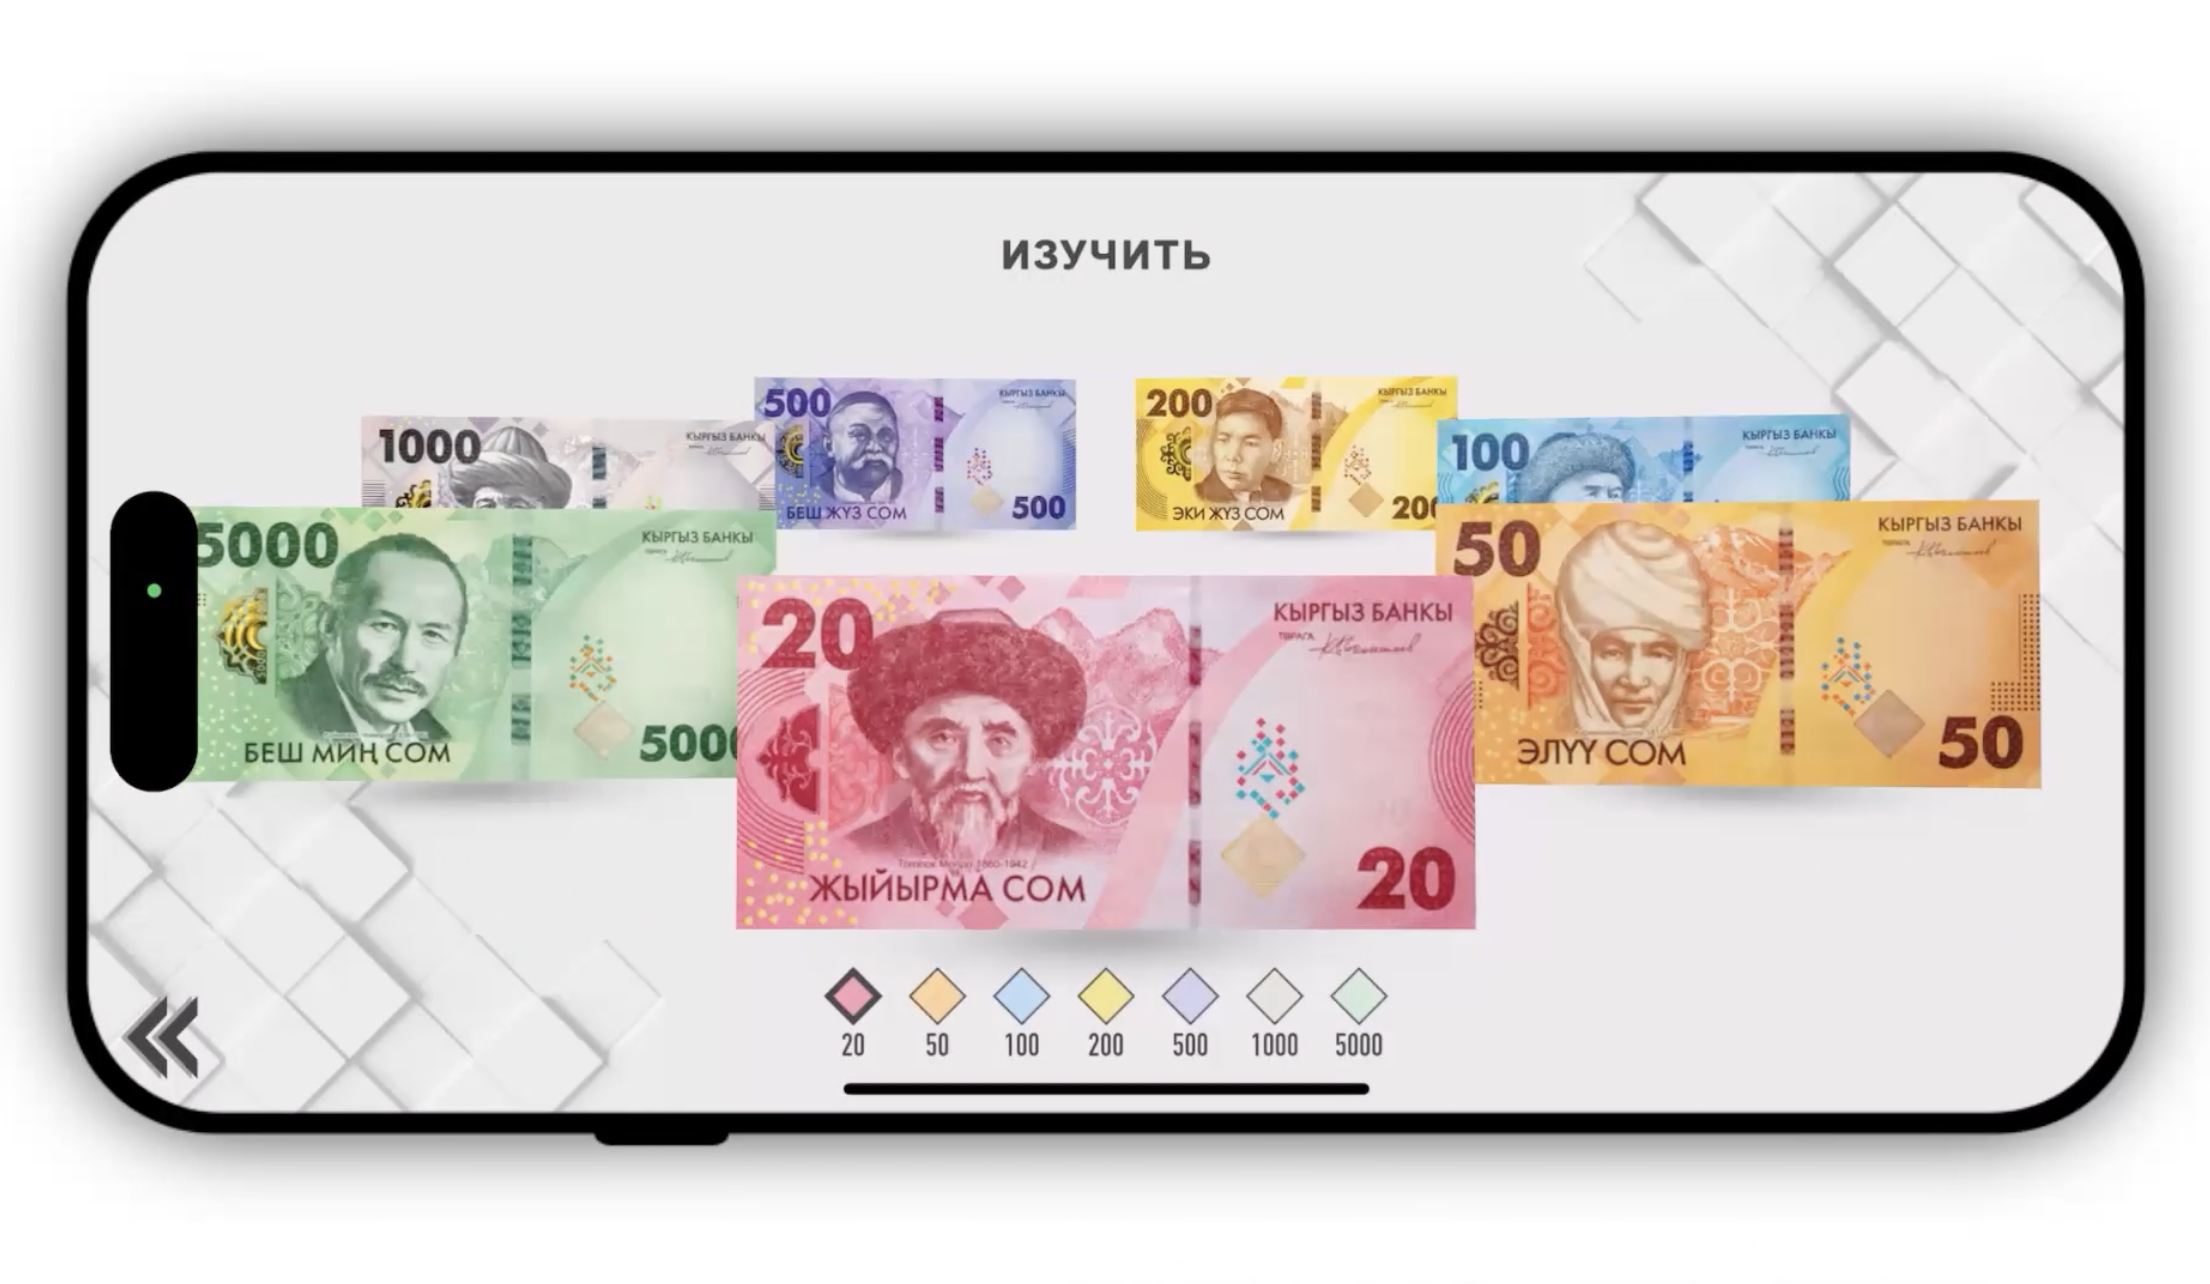 Нацбанк выпустил мобильное приложение для демонстрации защиты новых банкнот